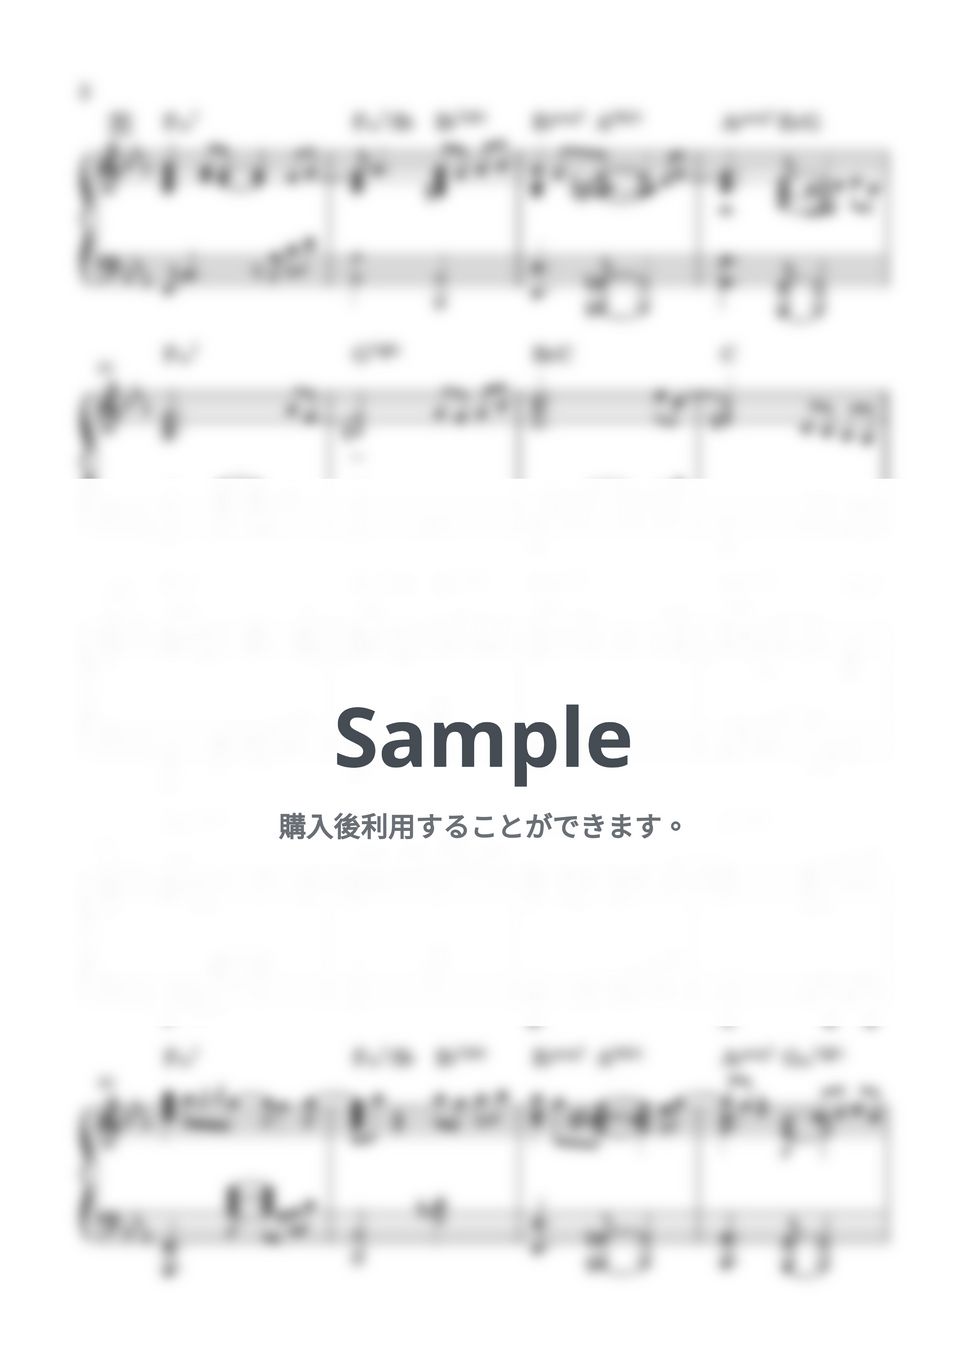 藤井風 - 花(Ballad) (ピアノソロ いちばんすきな花) by miiの楽譜棚